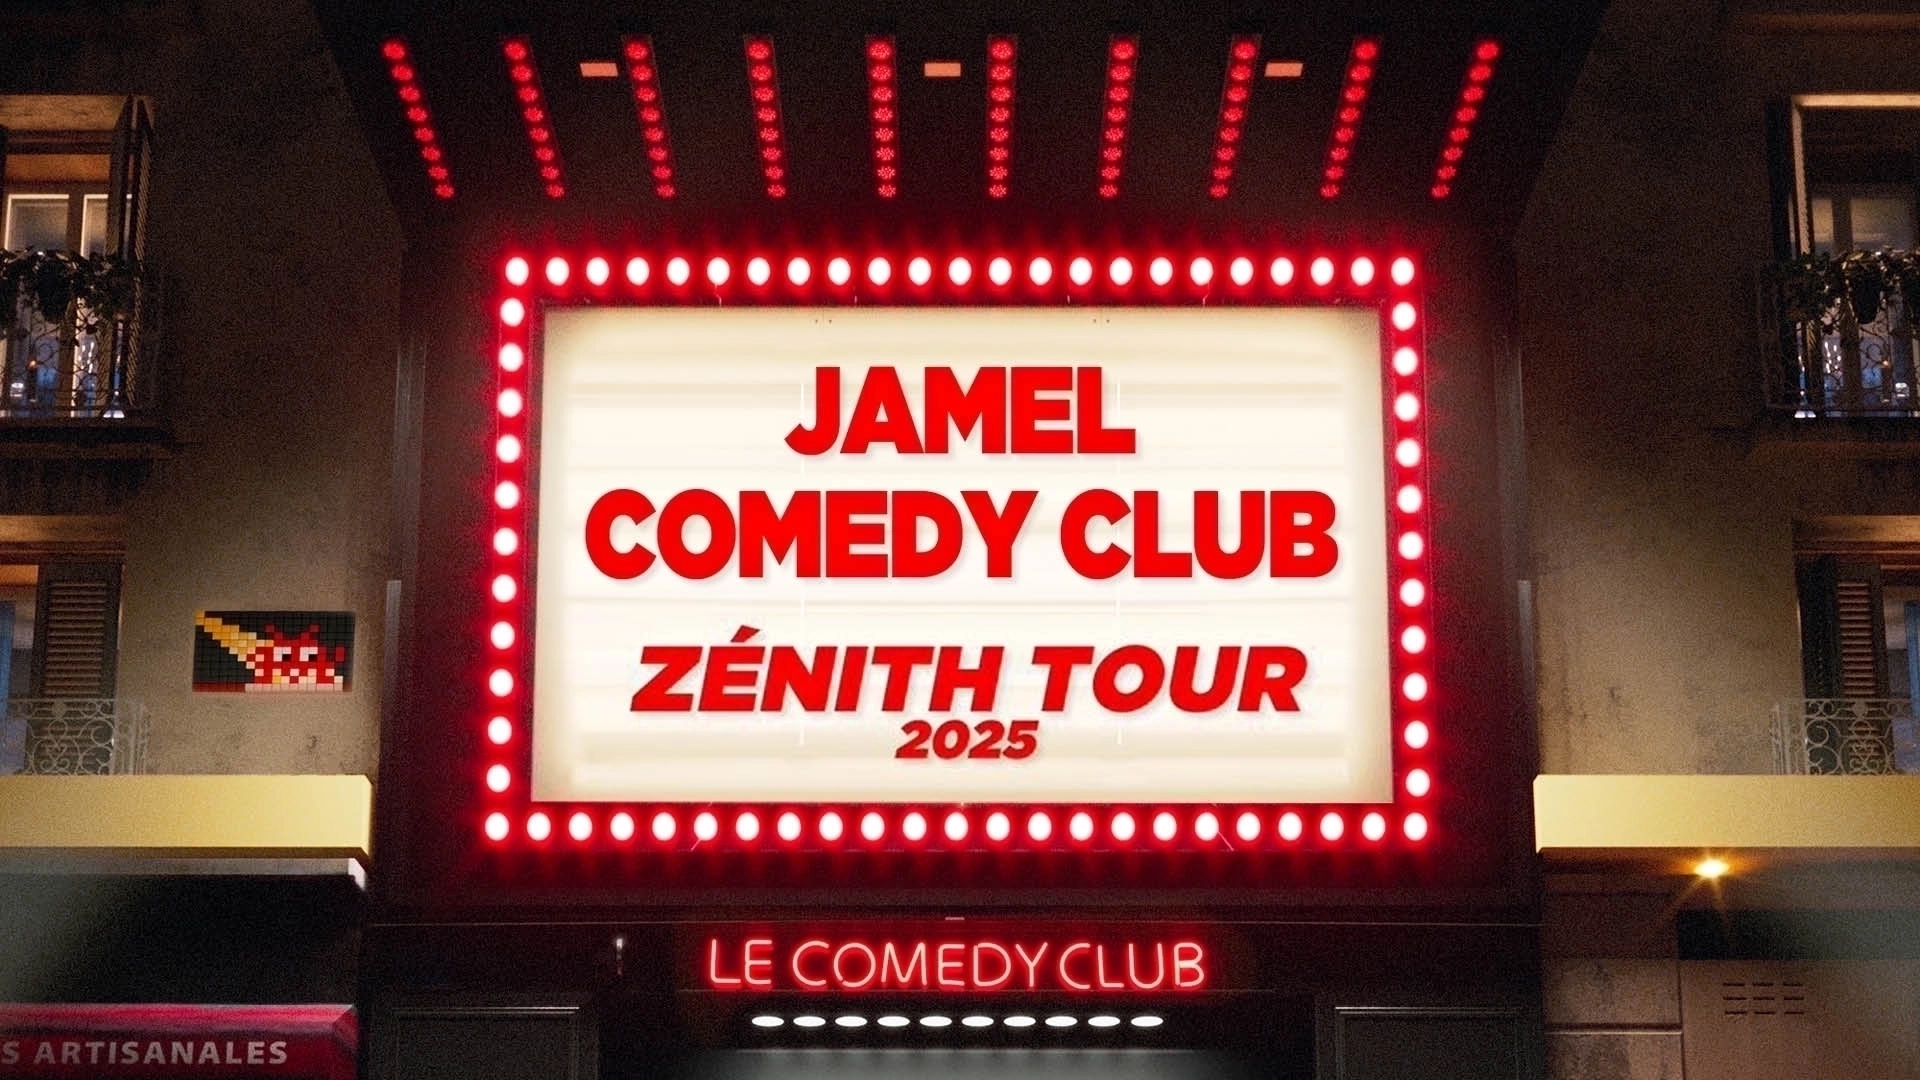 Jamel Comedy Club Zenith Tour 2025 at Palais des Sports - Dome de Paris Tickets